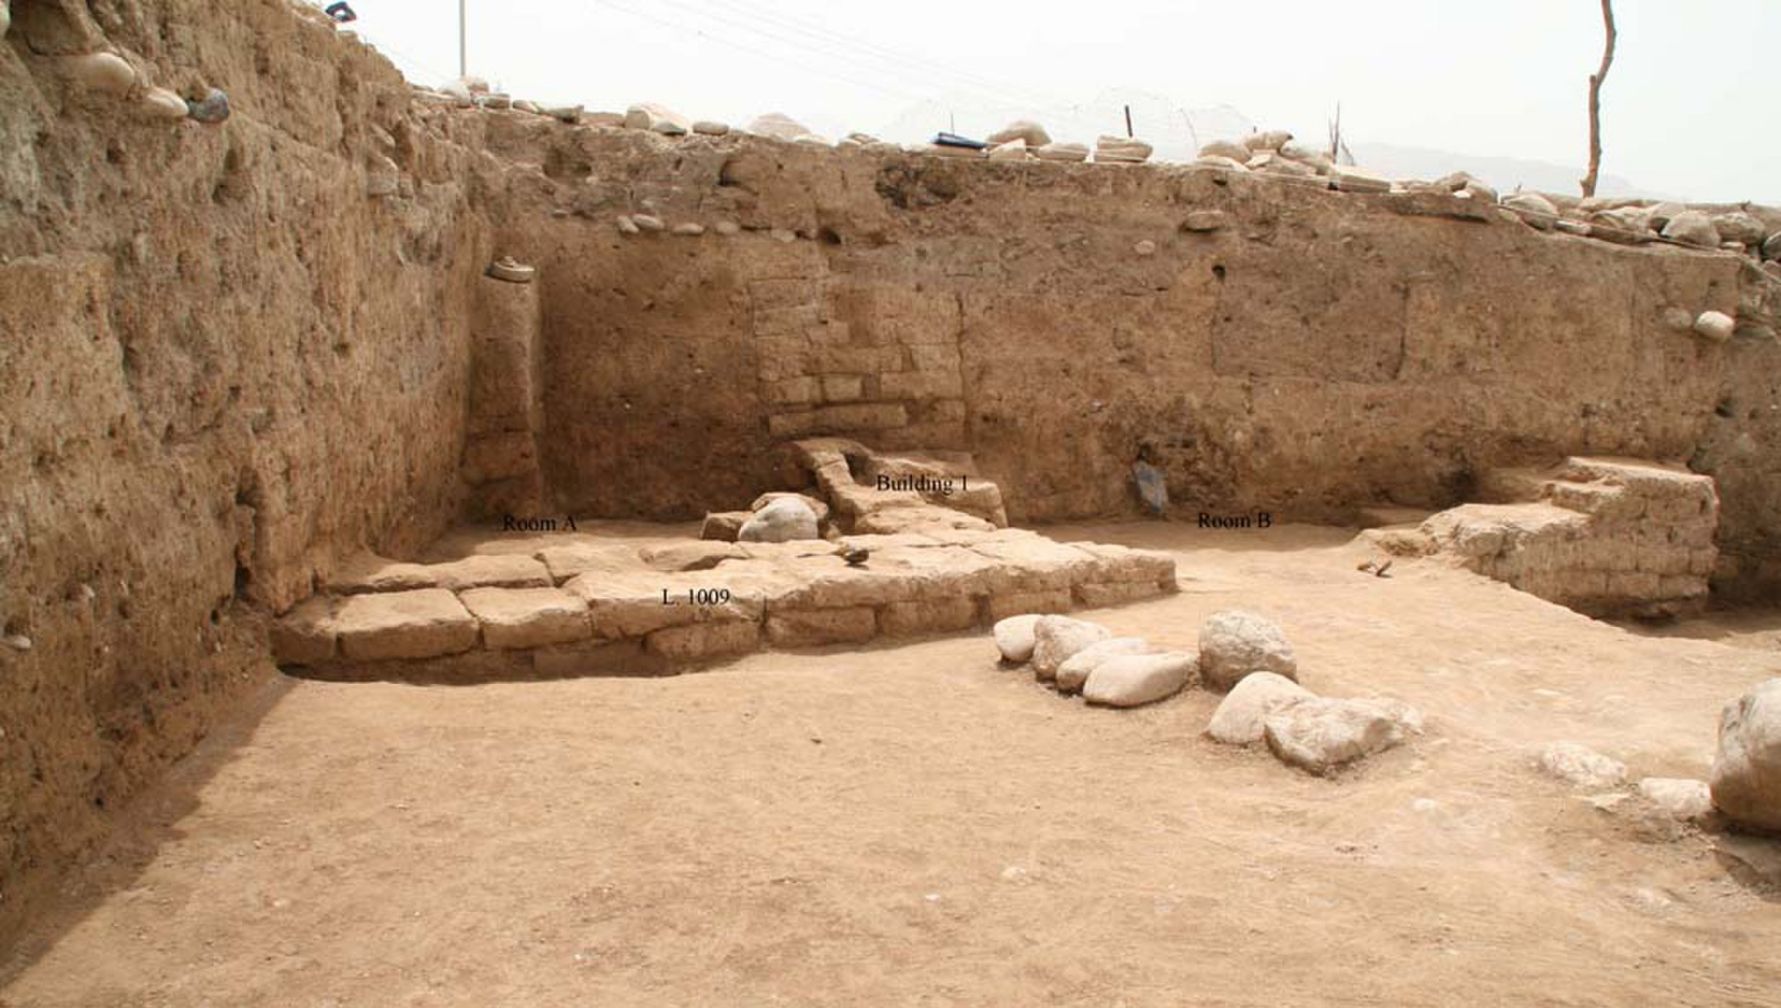 Arkeologer i Kurdistan-regionen i norra Irak har upptäckt en gammal stad som kallades "Idu". Platsen var ockuperad så långt tillbaka som den neolitiska perioden, då jordbruket först dök upp i Mellanöstern, och staden nådde sin största utsträckning för mellan 3,300 2,900 och 2,000 XNUMX år sedan. Byggnaden som visas här är en inhemsk struktur, med minst två rum, som kan dateras till relativt sent i stadens liv, kanske för cirka XNUMX XNUMX år sedan när det Parthiska riket kontrollerade området.